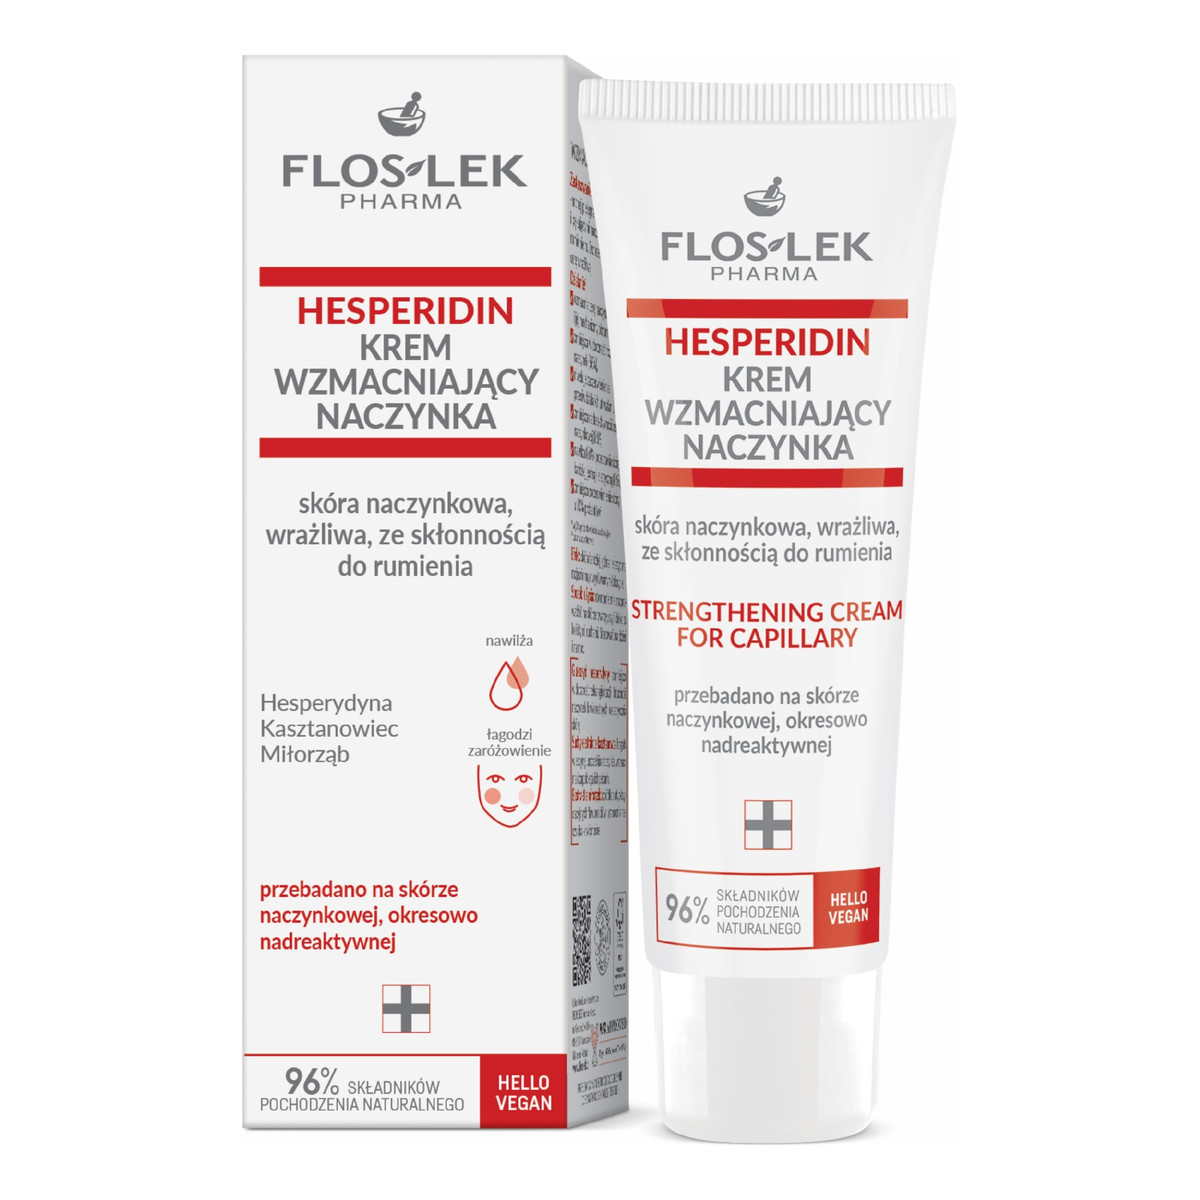 FlosLek Pharma Hesperidin Krem wzmacniający naczynka-skóra naczynkowa,wrażliwa ze skłonnością do rumienia 50ml